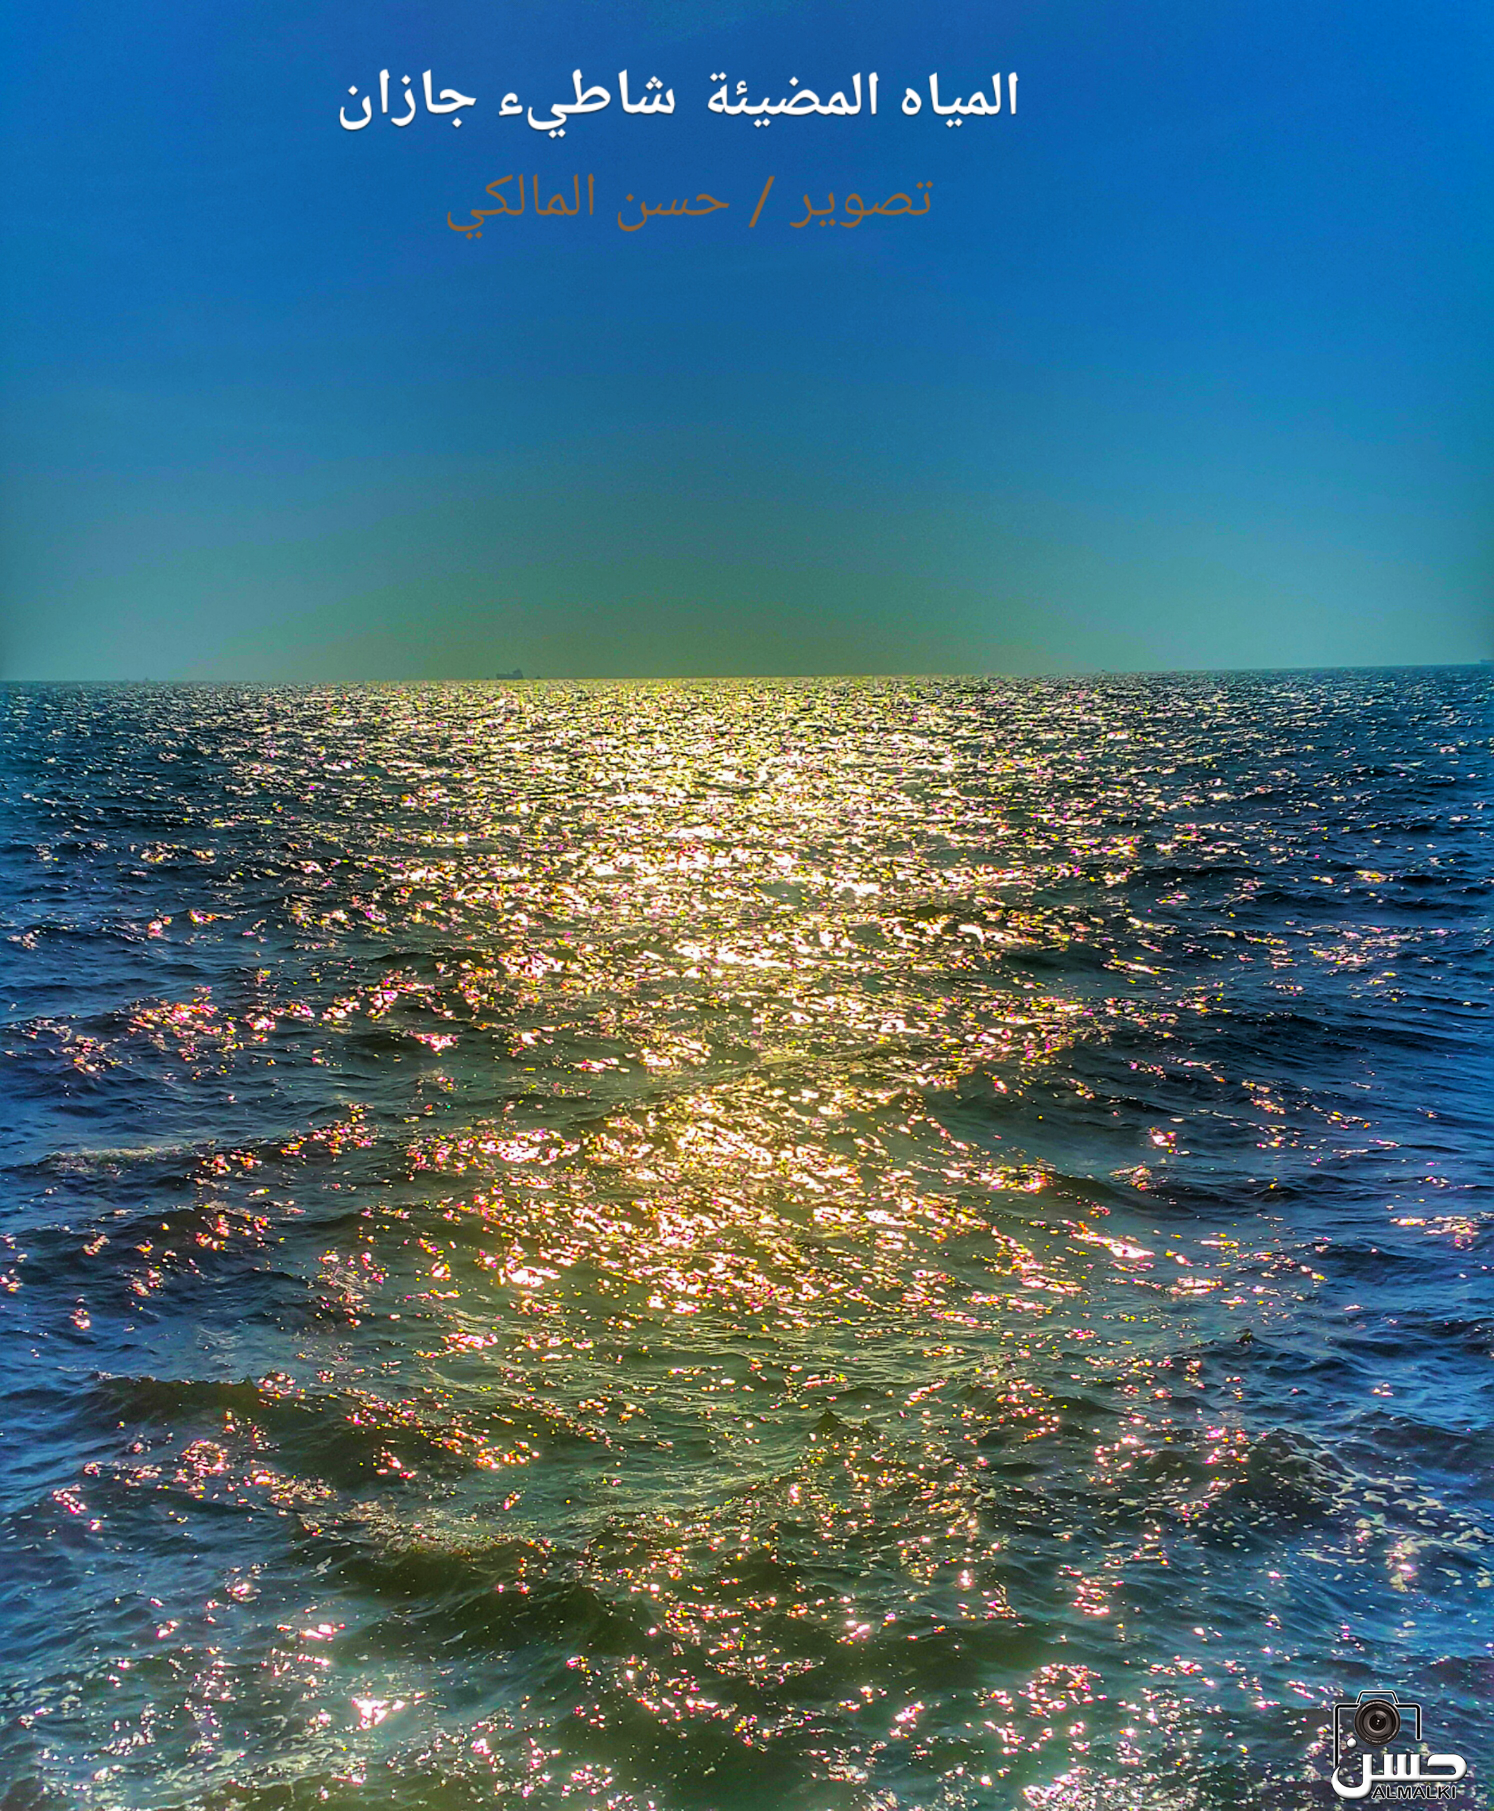 مياه البحر المضيئة - شاطيء جازان مساء الاحد 17 ربيع ثاني 1438